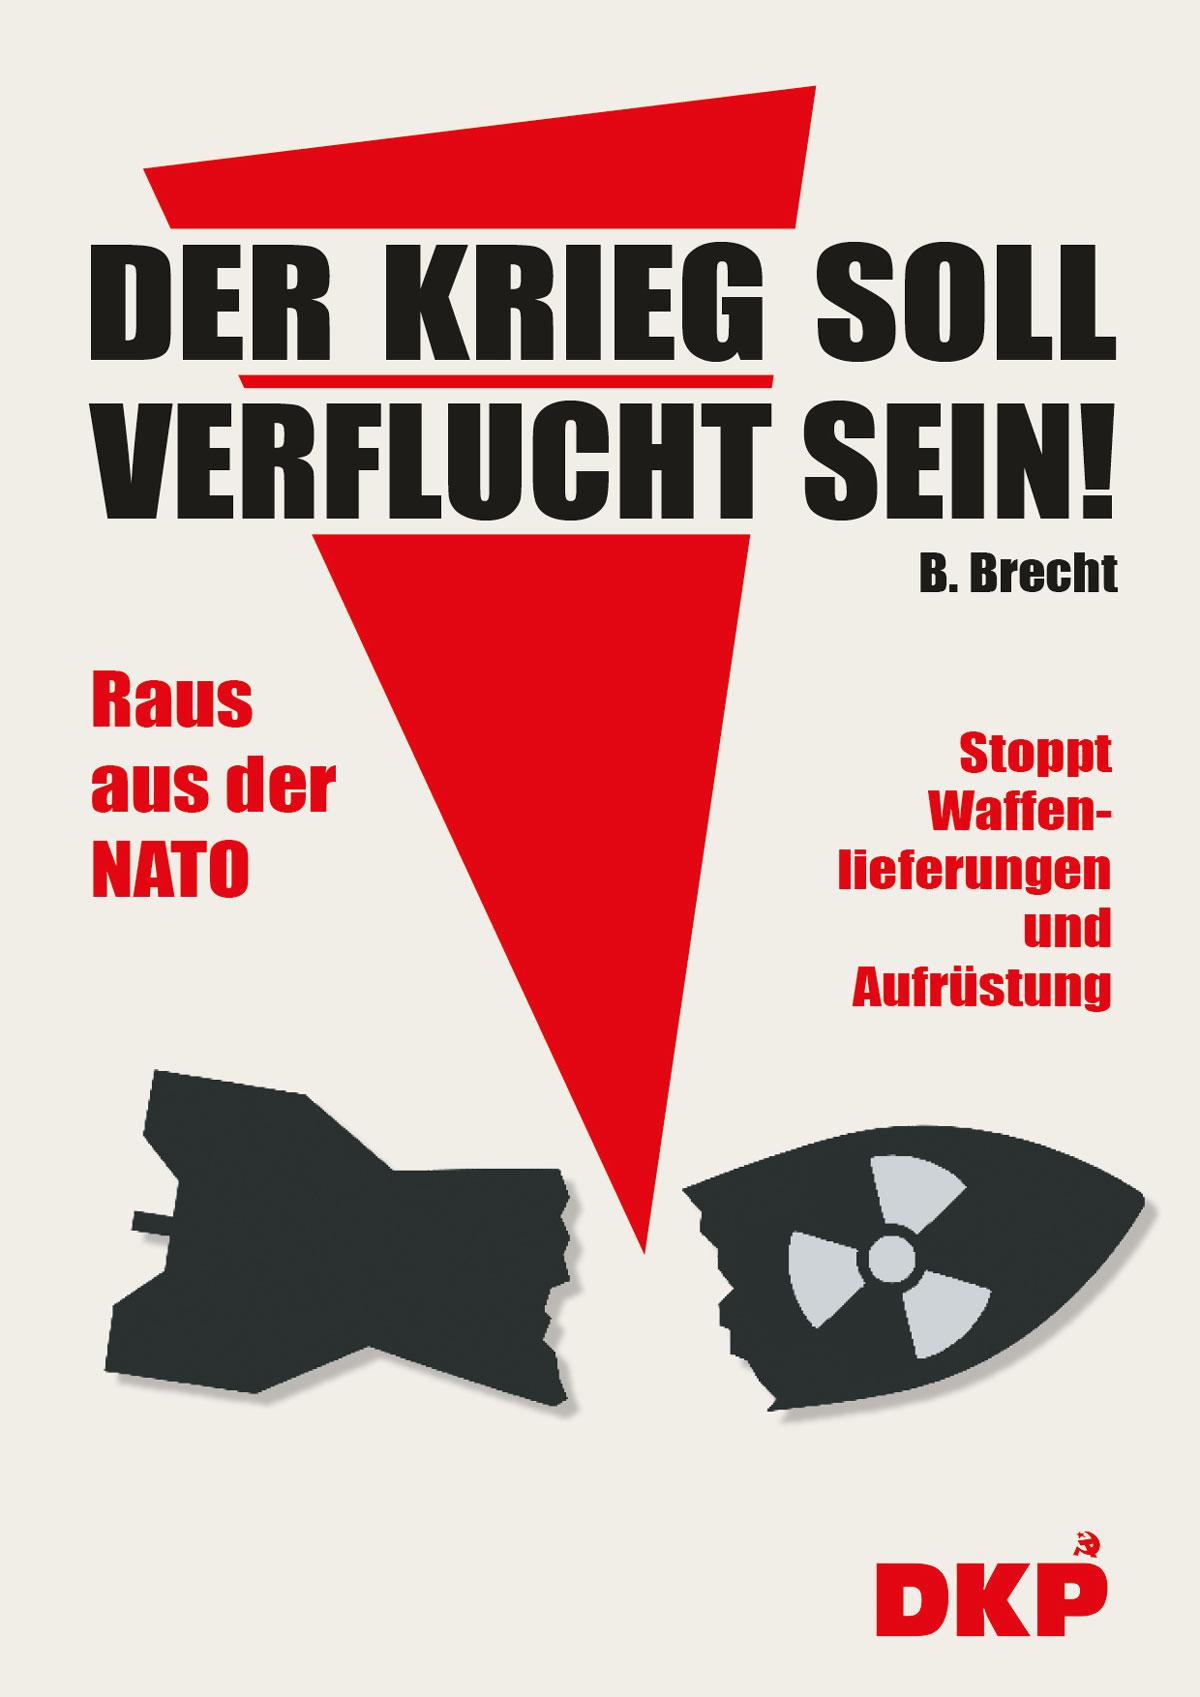 Plakat Krieg5 - Alle nach Berlin! - Friedensbewegung - Politik